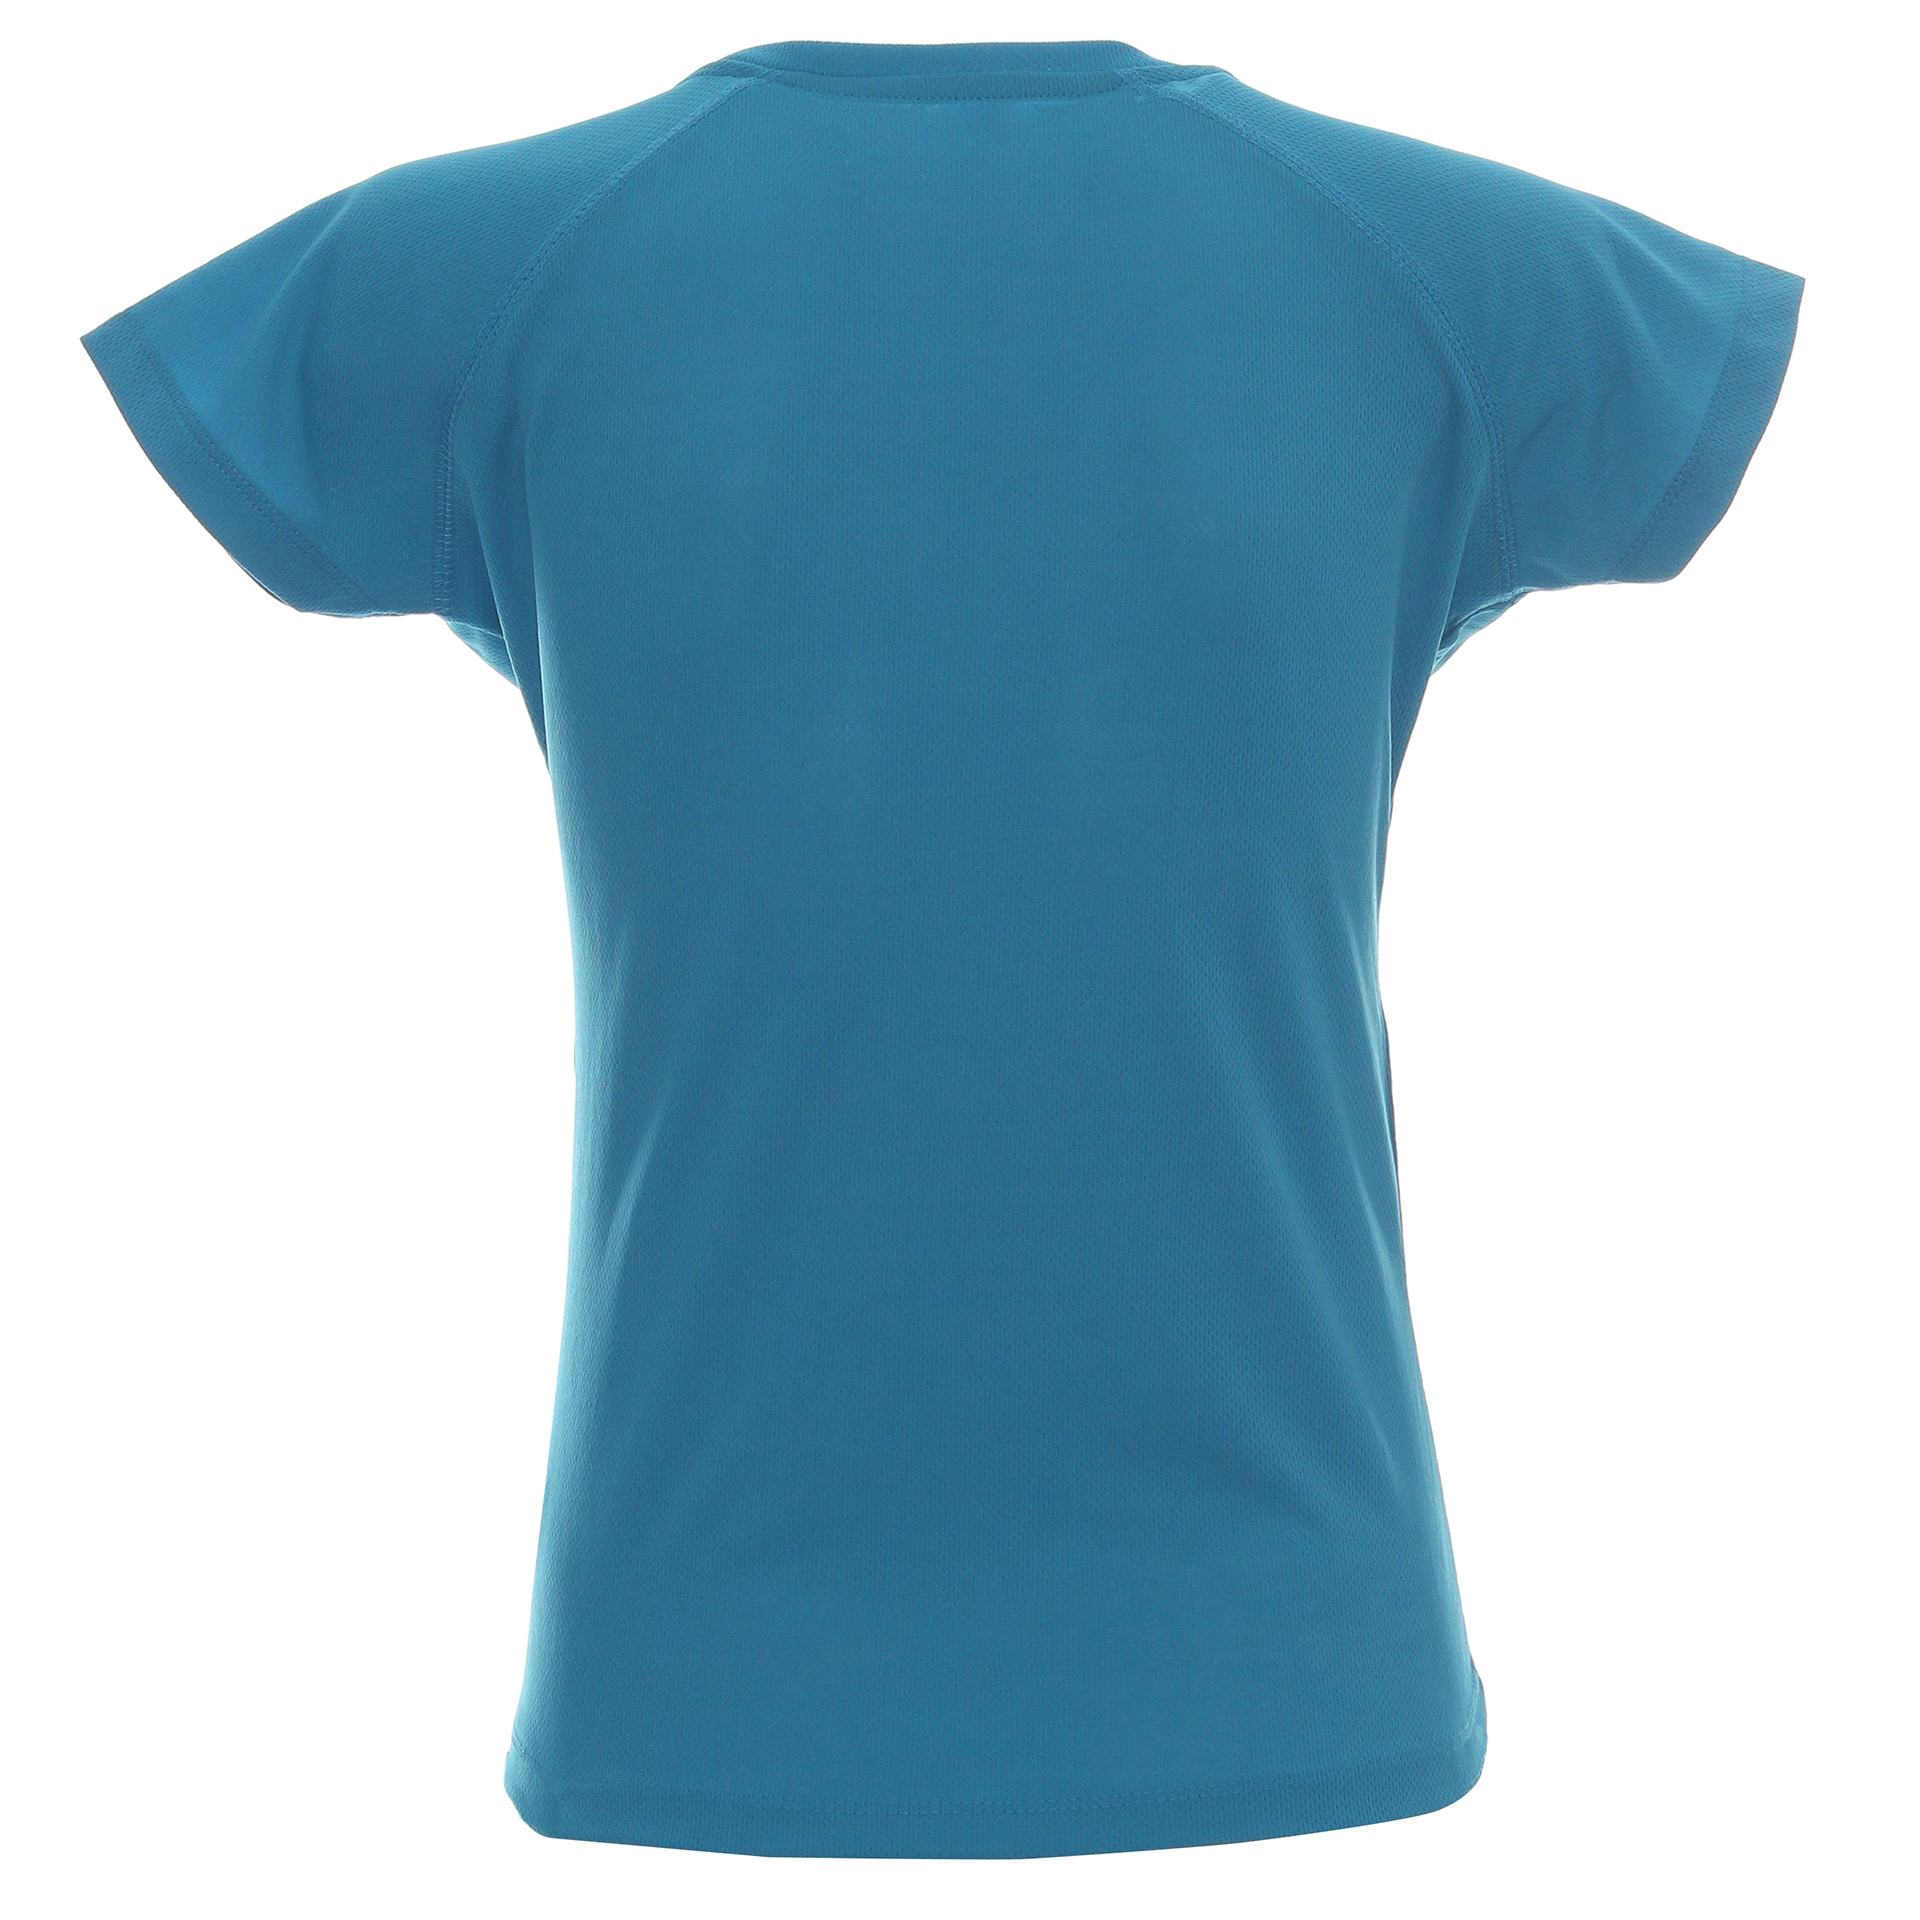 Koszulka Promostars Ladies Chill - niebieska